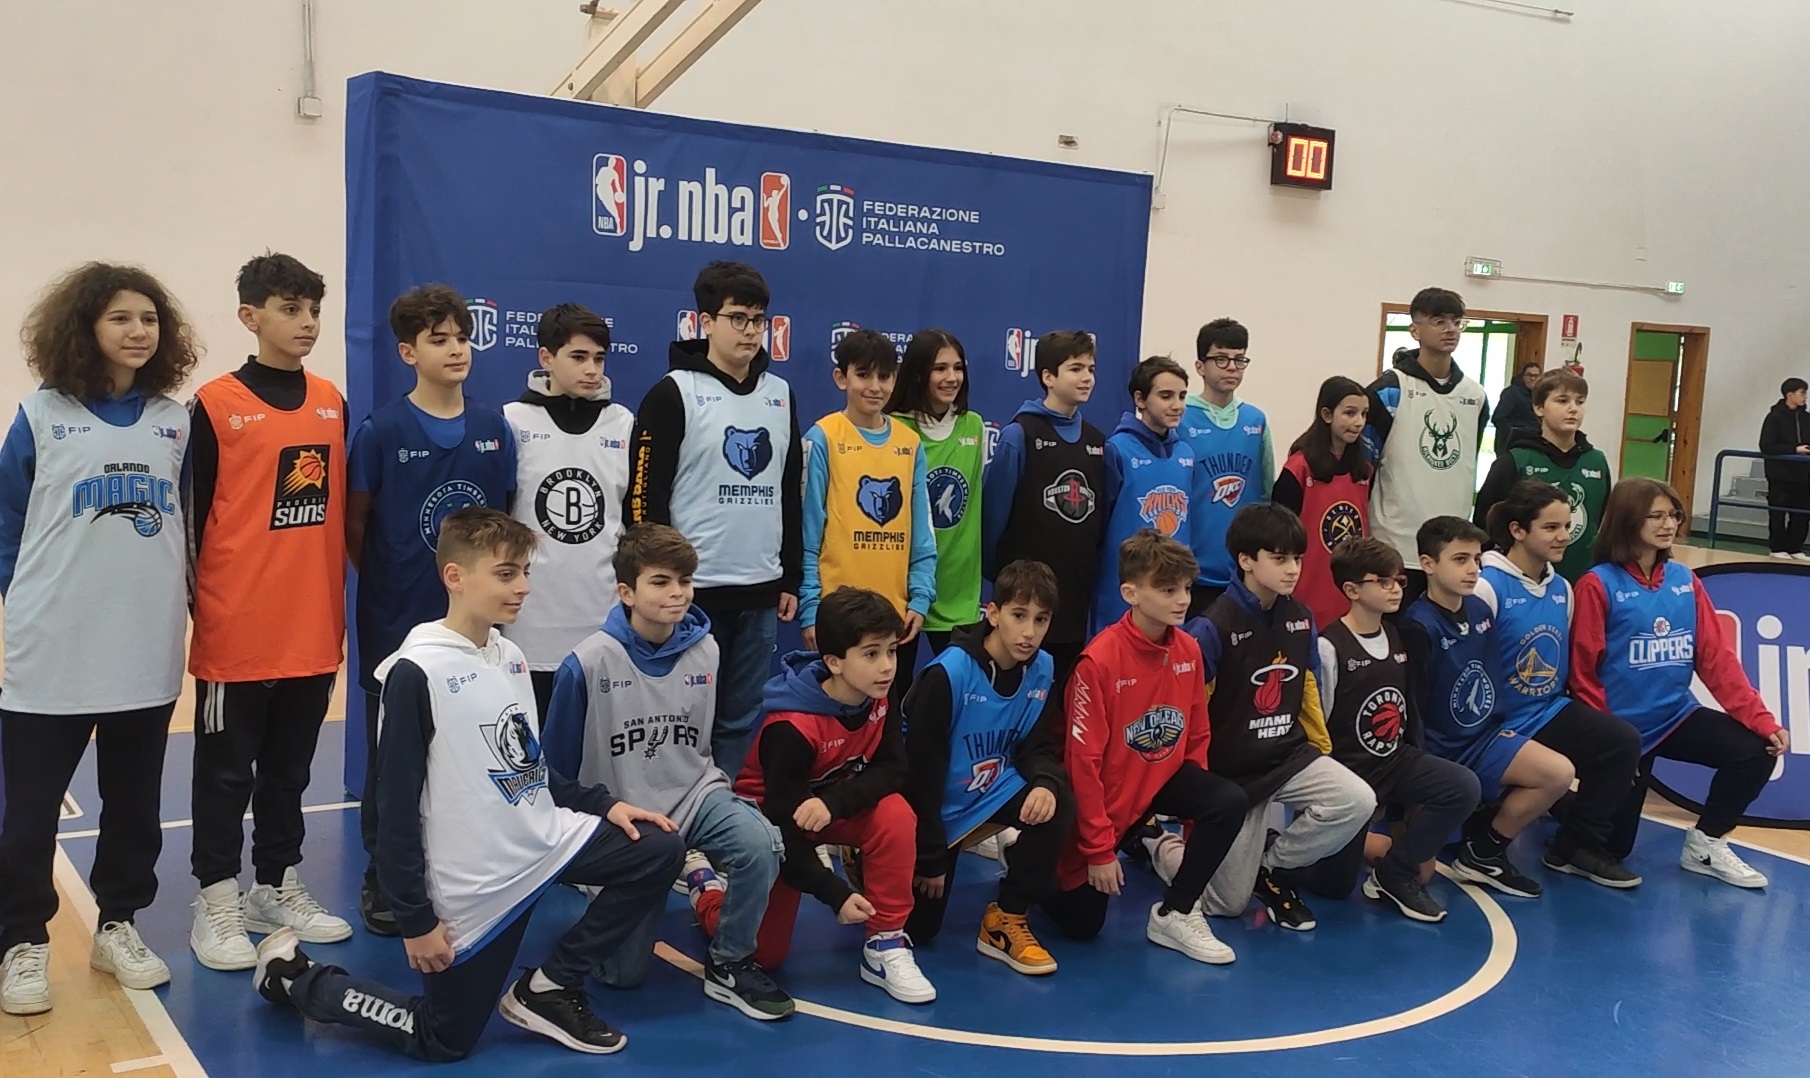 Una grande festa del basket giovanile pugliese: domenica 21 maggio al Palaflorio le finali di Conference di Junior NBA